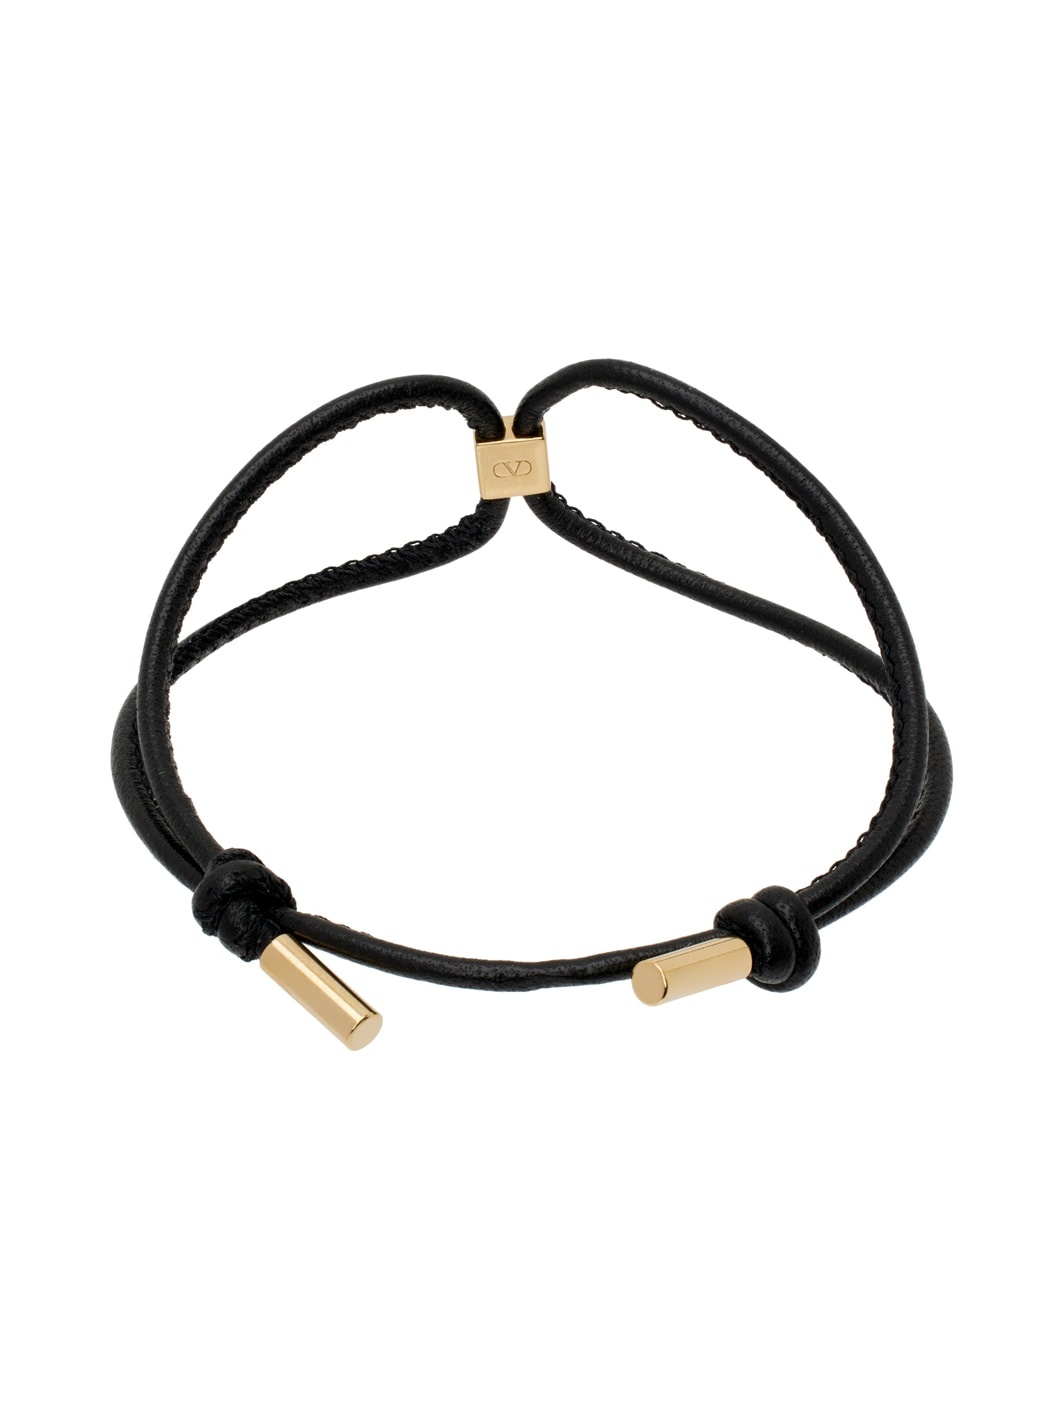 Black & Gold Rockstud Leather Bracelet - 2